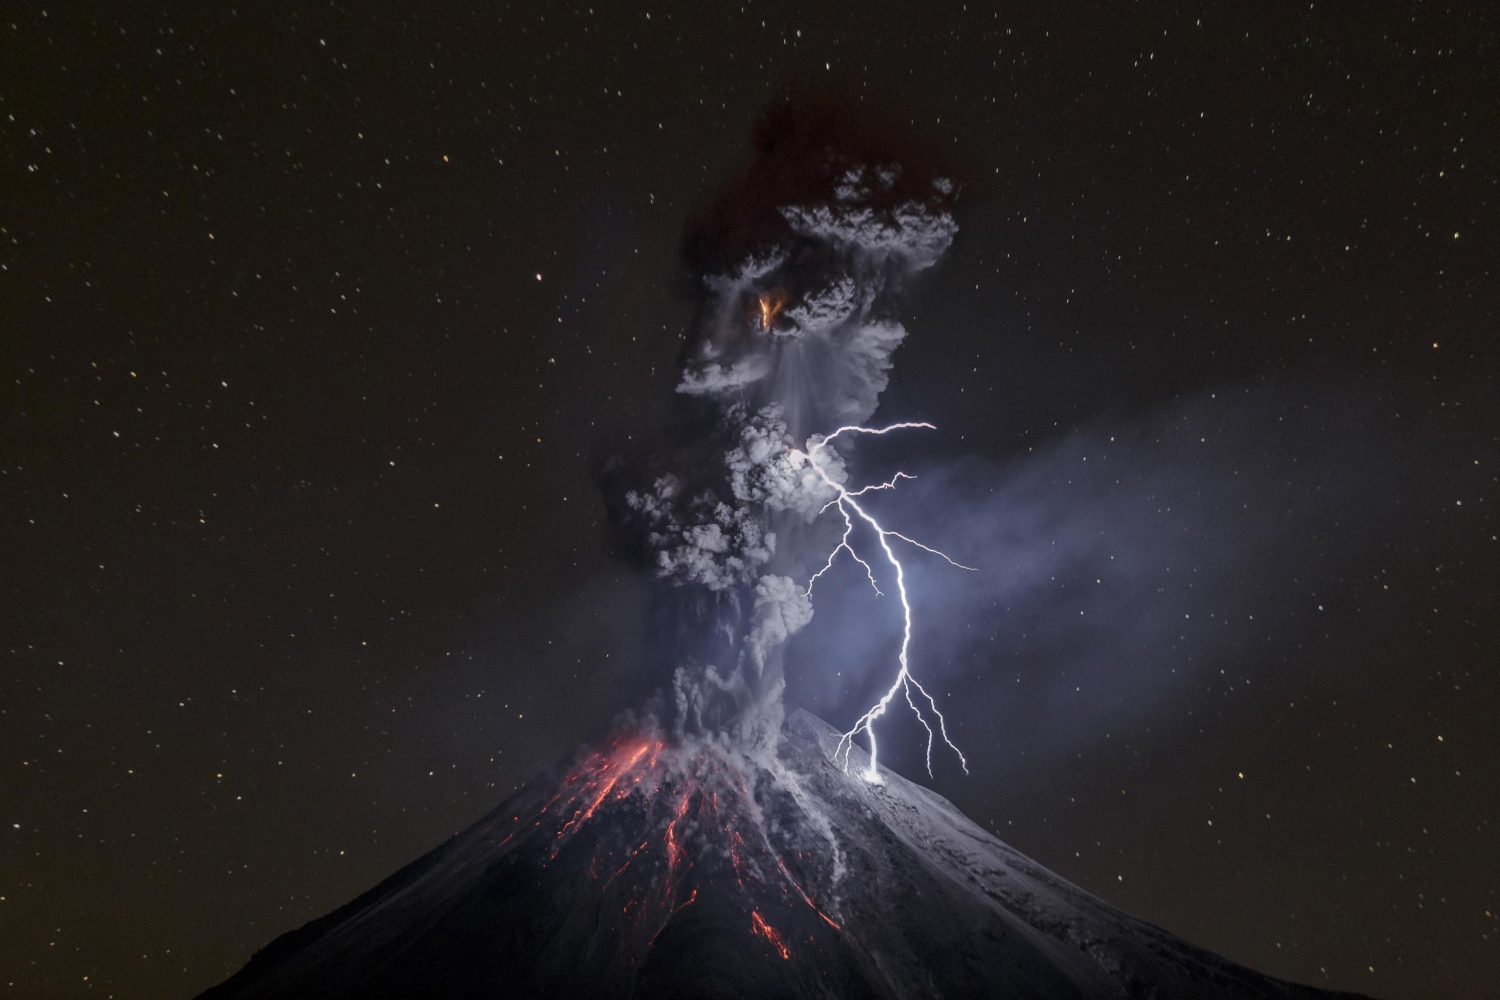 El imponente volcán Colima, tercer premio 'Naturaleza' del World Press Photo